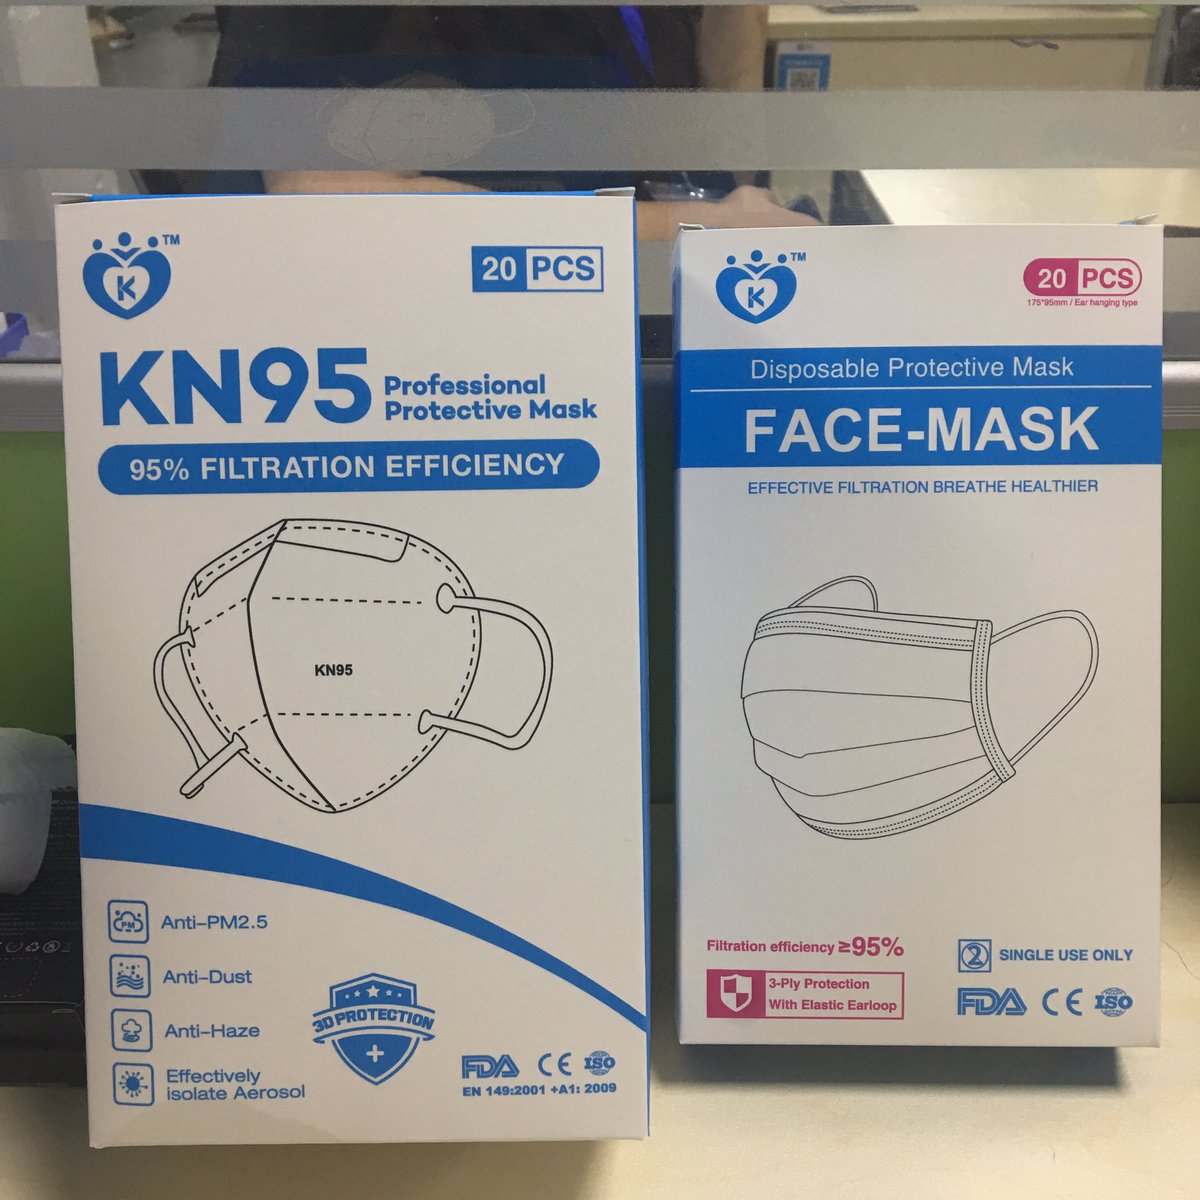 #facemask factory wholesale.
#KN95 FFP2 with CE and FDA certificates.

#masks #facemasks #n95mask #n95 #mouthmask #facemaskselfie #diymask #mask #stayhome #kn95mask #n95mask #mask #masks #disposablemask #masksupplier #suppliermasker #kn95masks #covid #covıd19 #masker